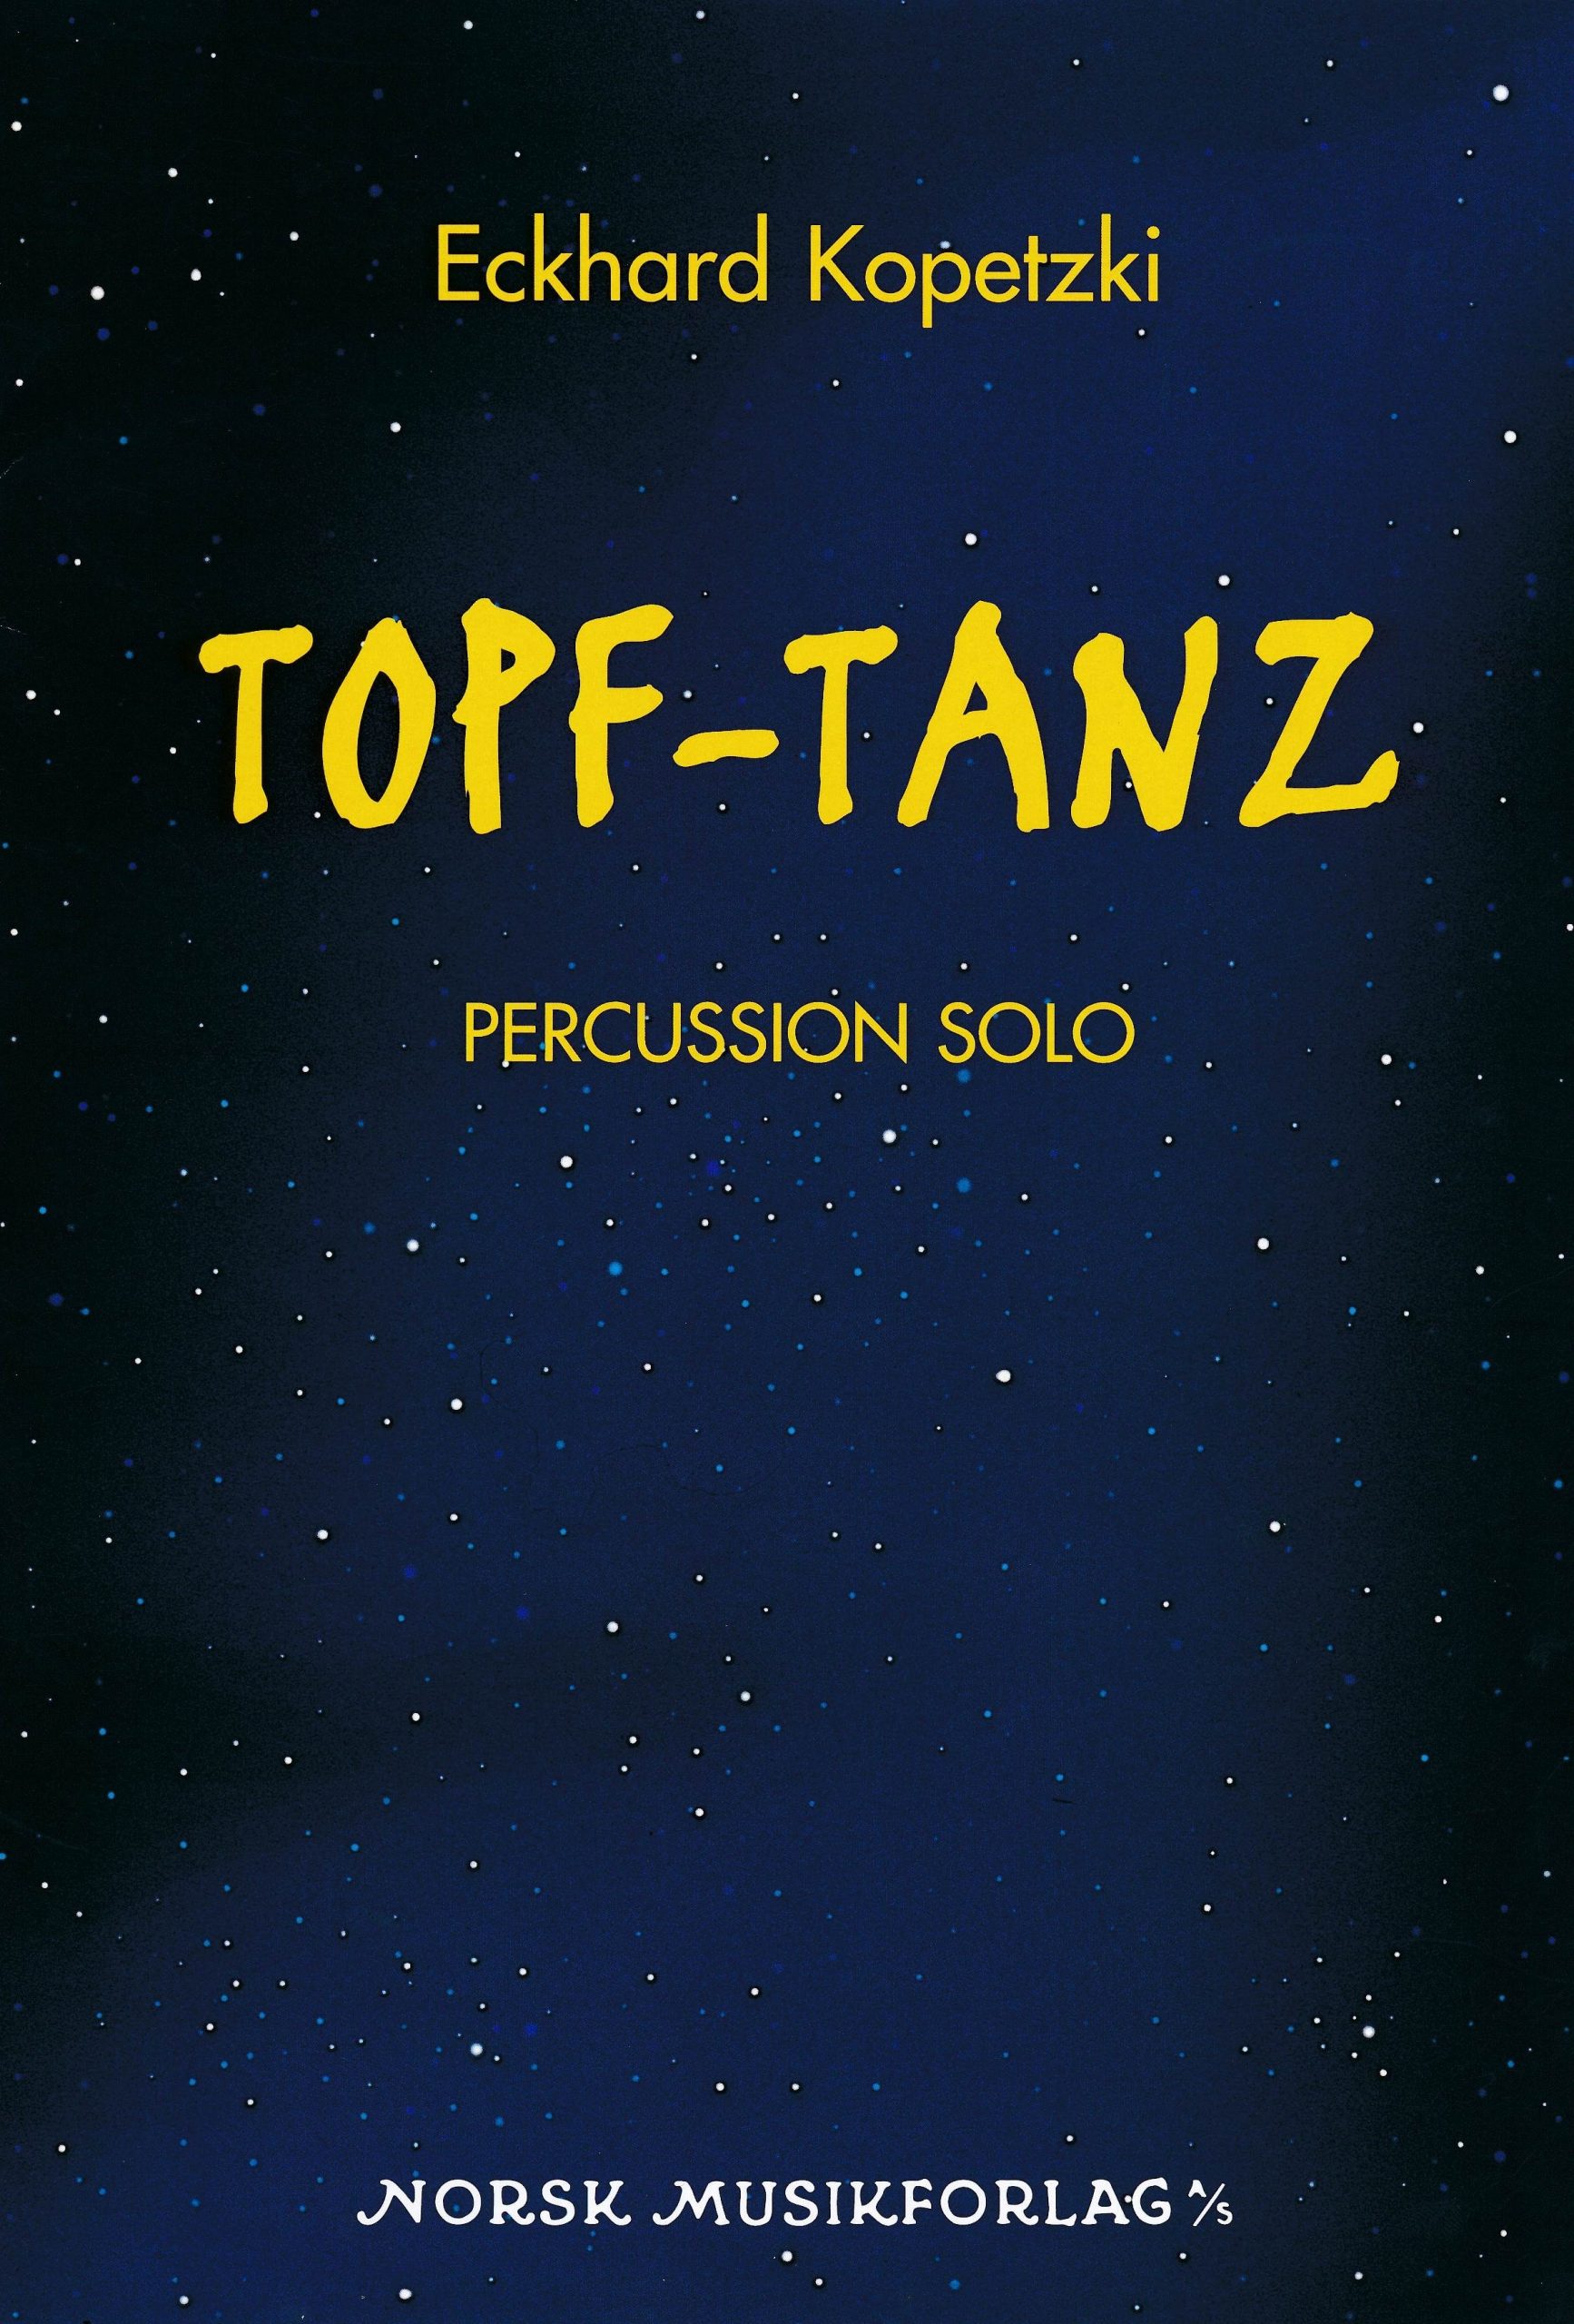 Topf-Tanz by Eckhard Kopetzki